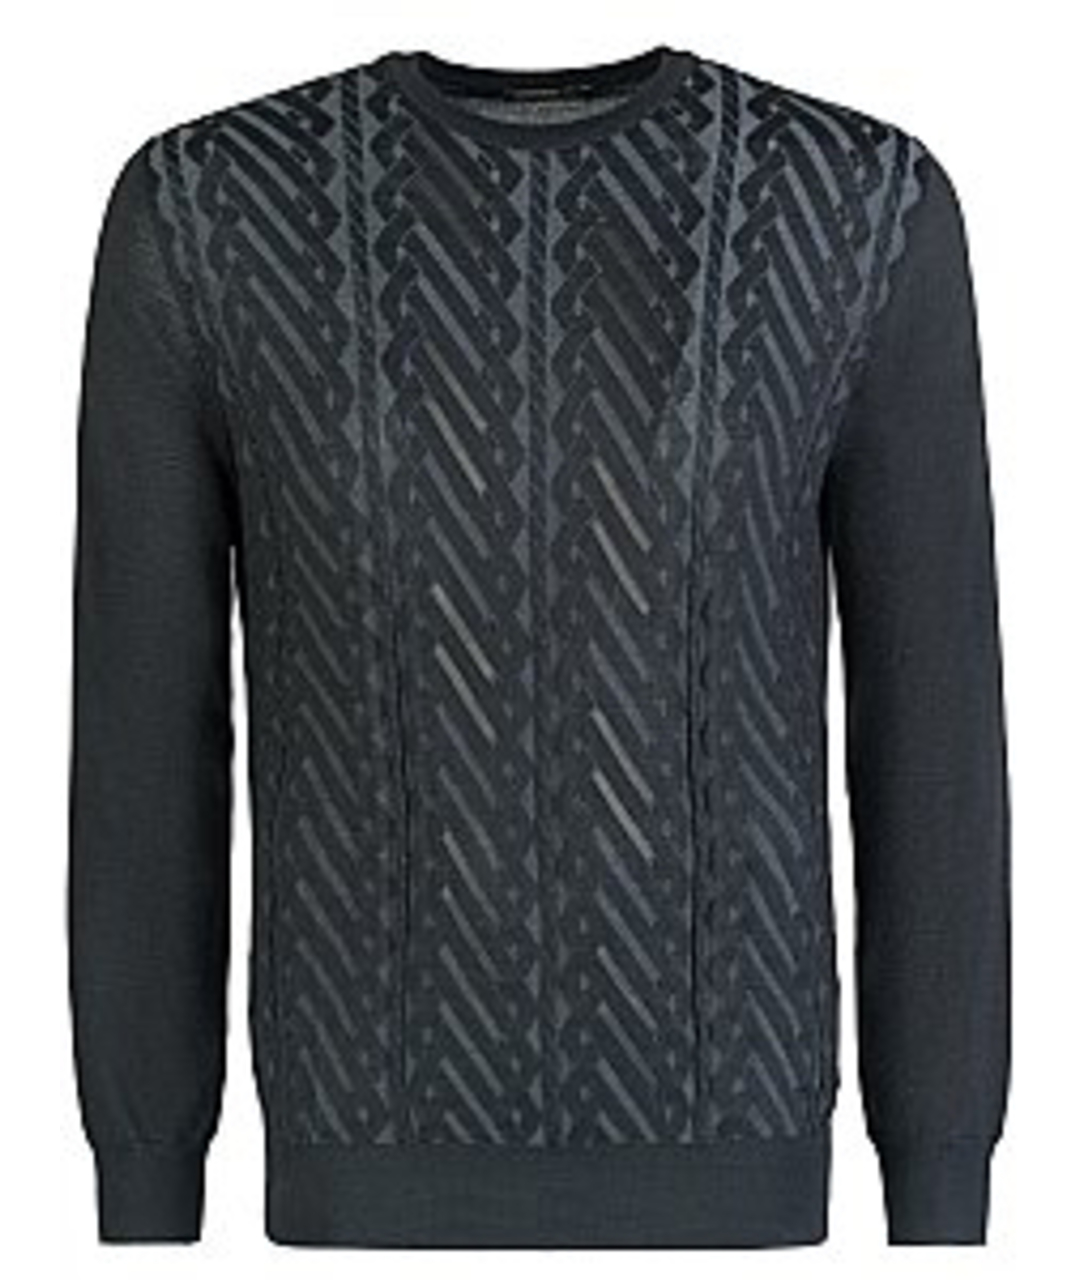 ZILLI Черный кашемировый джемпер / свитер, фото 1